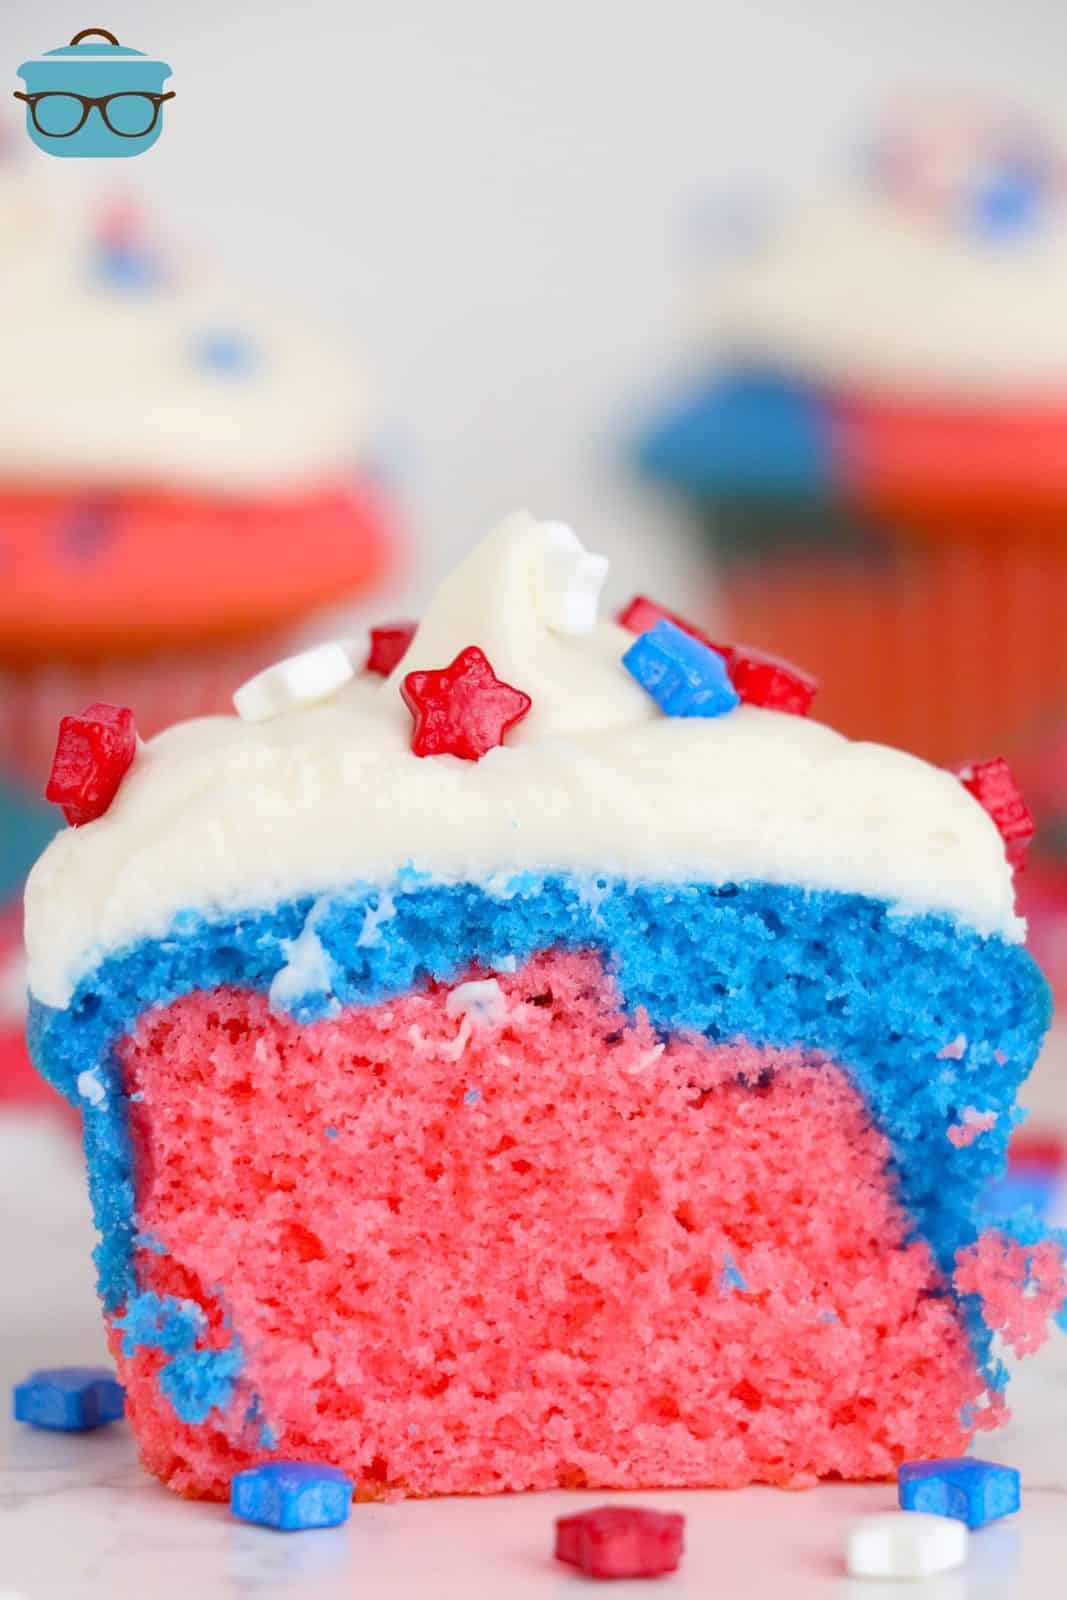 Uno dei Cupcakes Rosso, Bianco e Blu tagliato a metà che mostra i colori dell'interno.